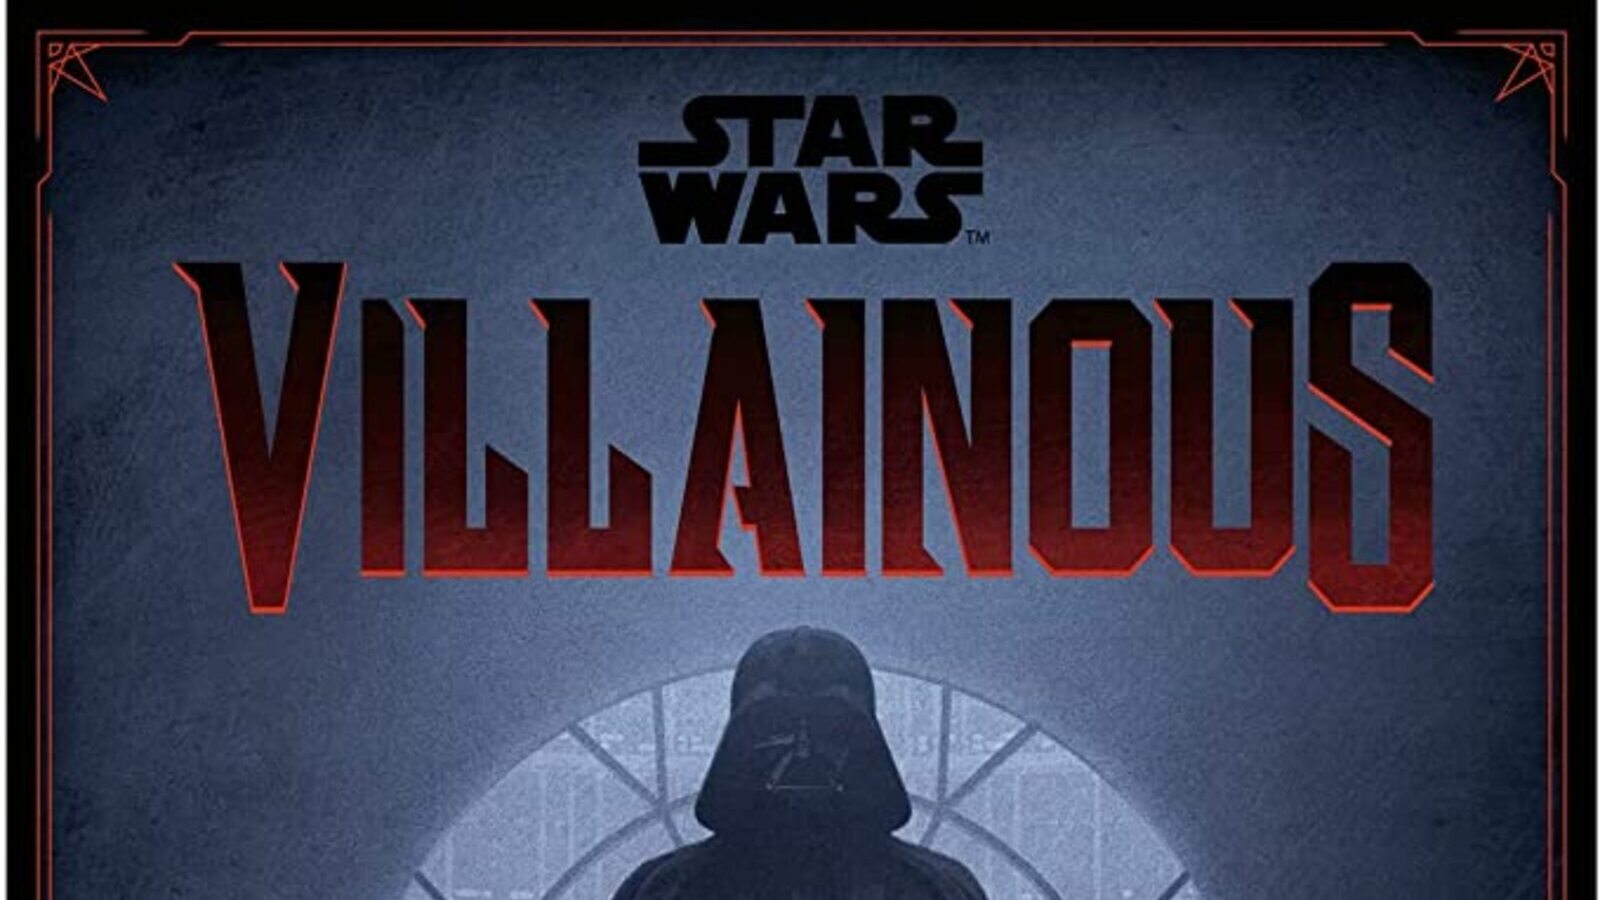 Star Wars Villainous: il gioco da tavolo dedicato al Lato Oscuro è a un prezzo imperdibile su Amazon